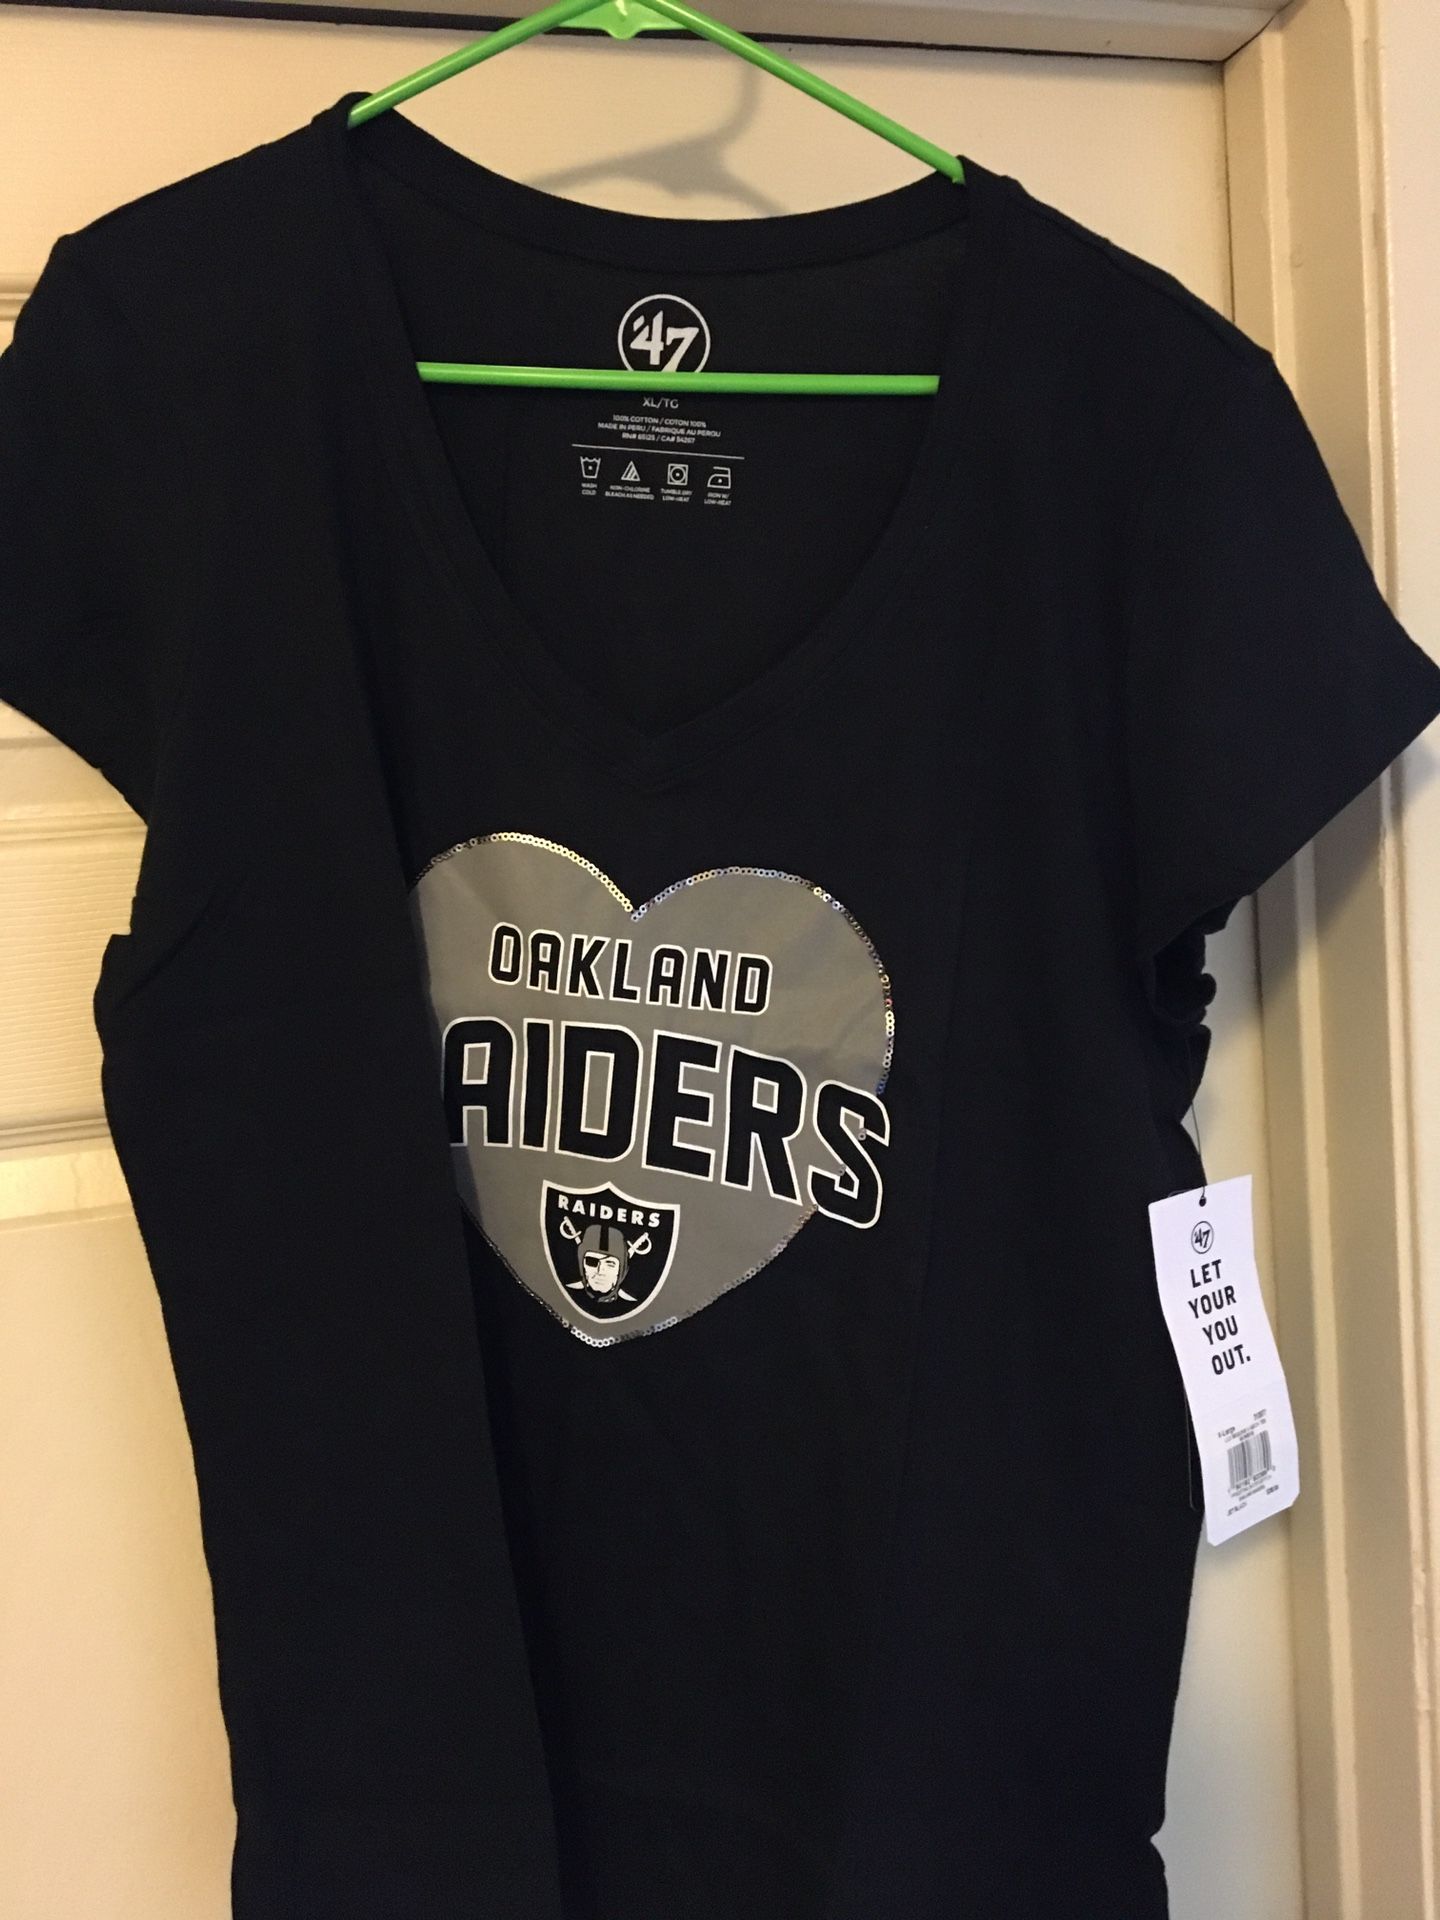 Raiders womens shirt(Large)